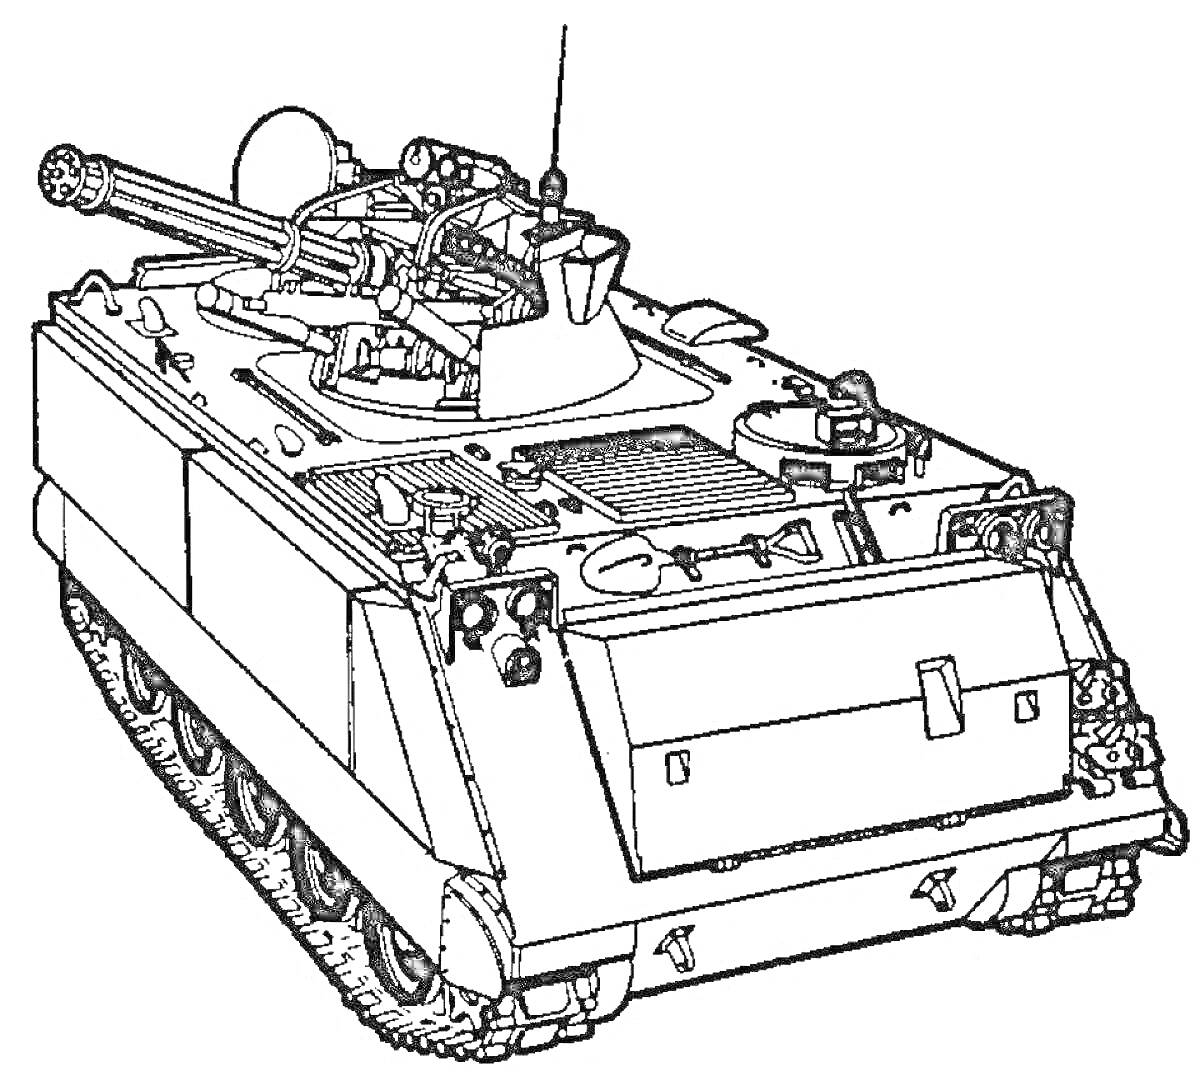 Раскраска Лего танк с пушкой, антеннами, и гусеничным движителем